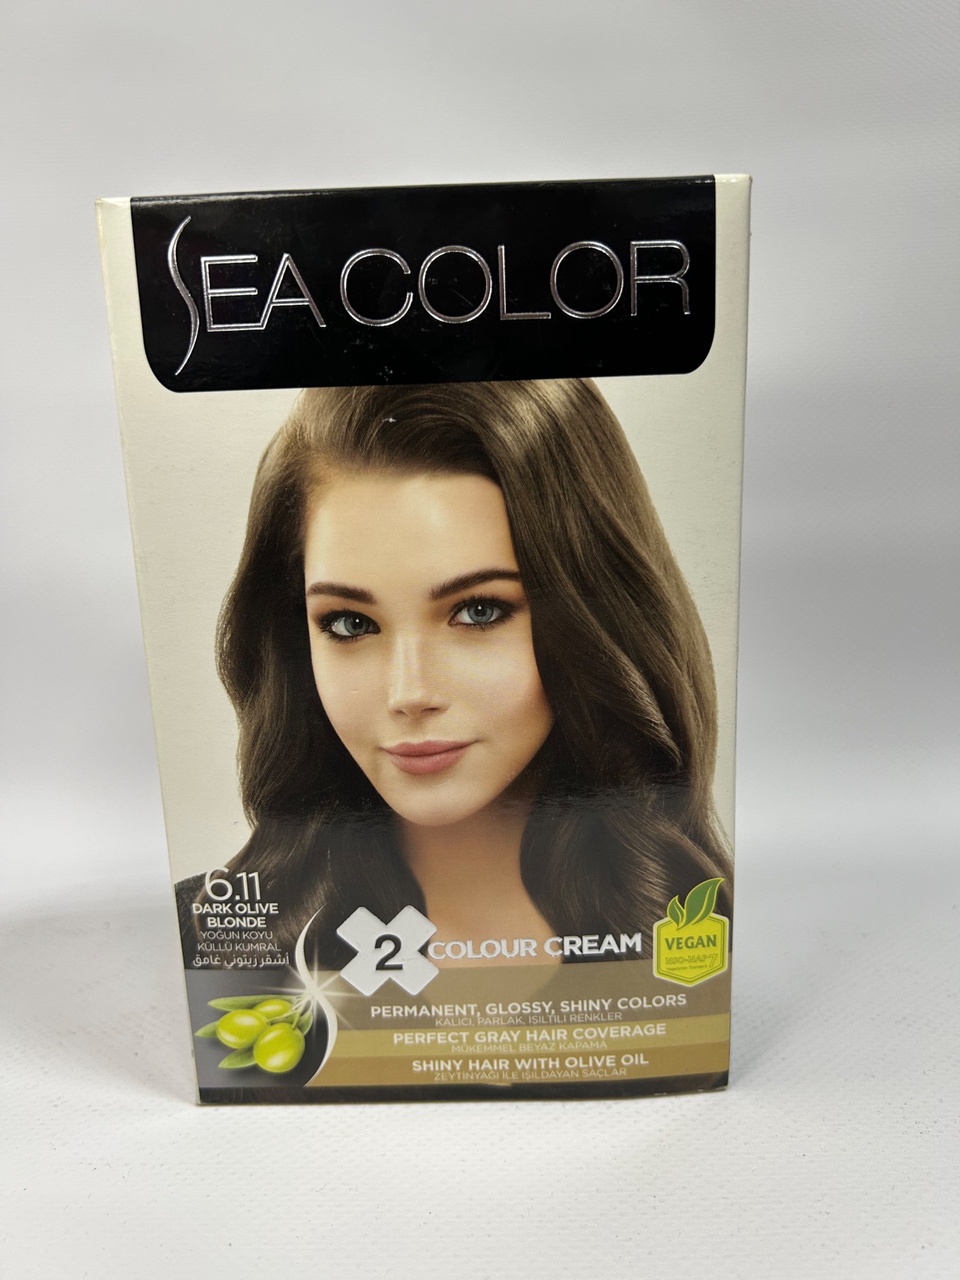 Sea Color 6.11 “Интенсивно пепельного темно русый» - 300 ₽, заказать онлайн.